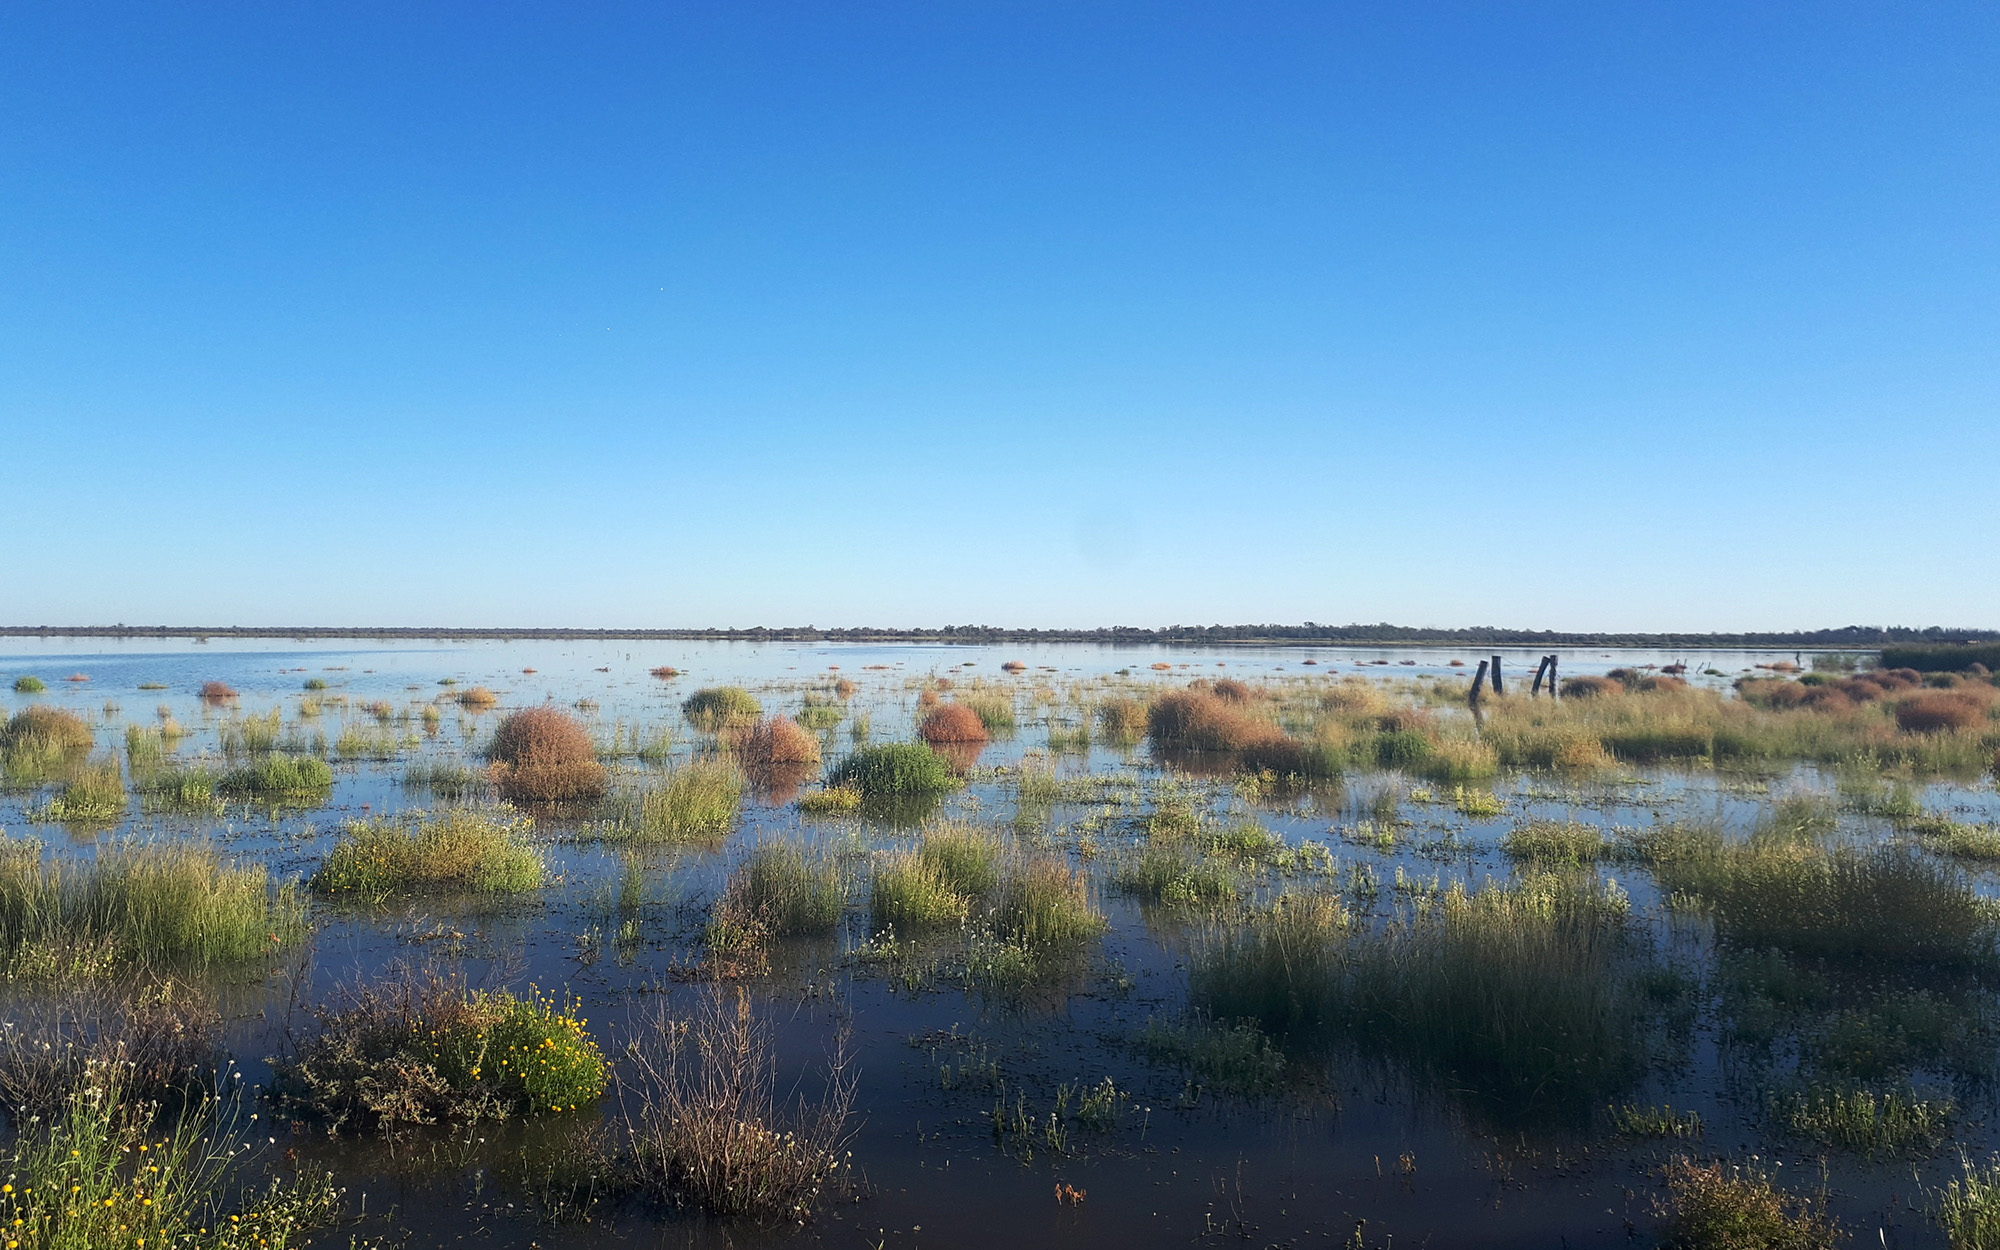 Narran Lake Nature Reserve in flood, April 2021.